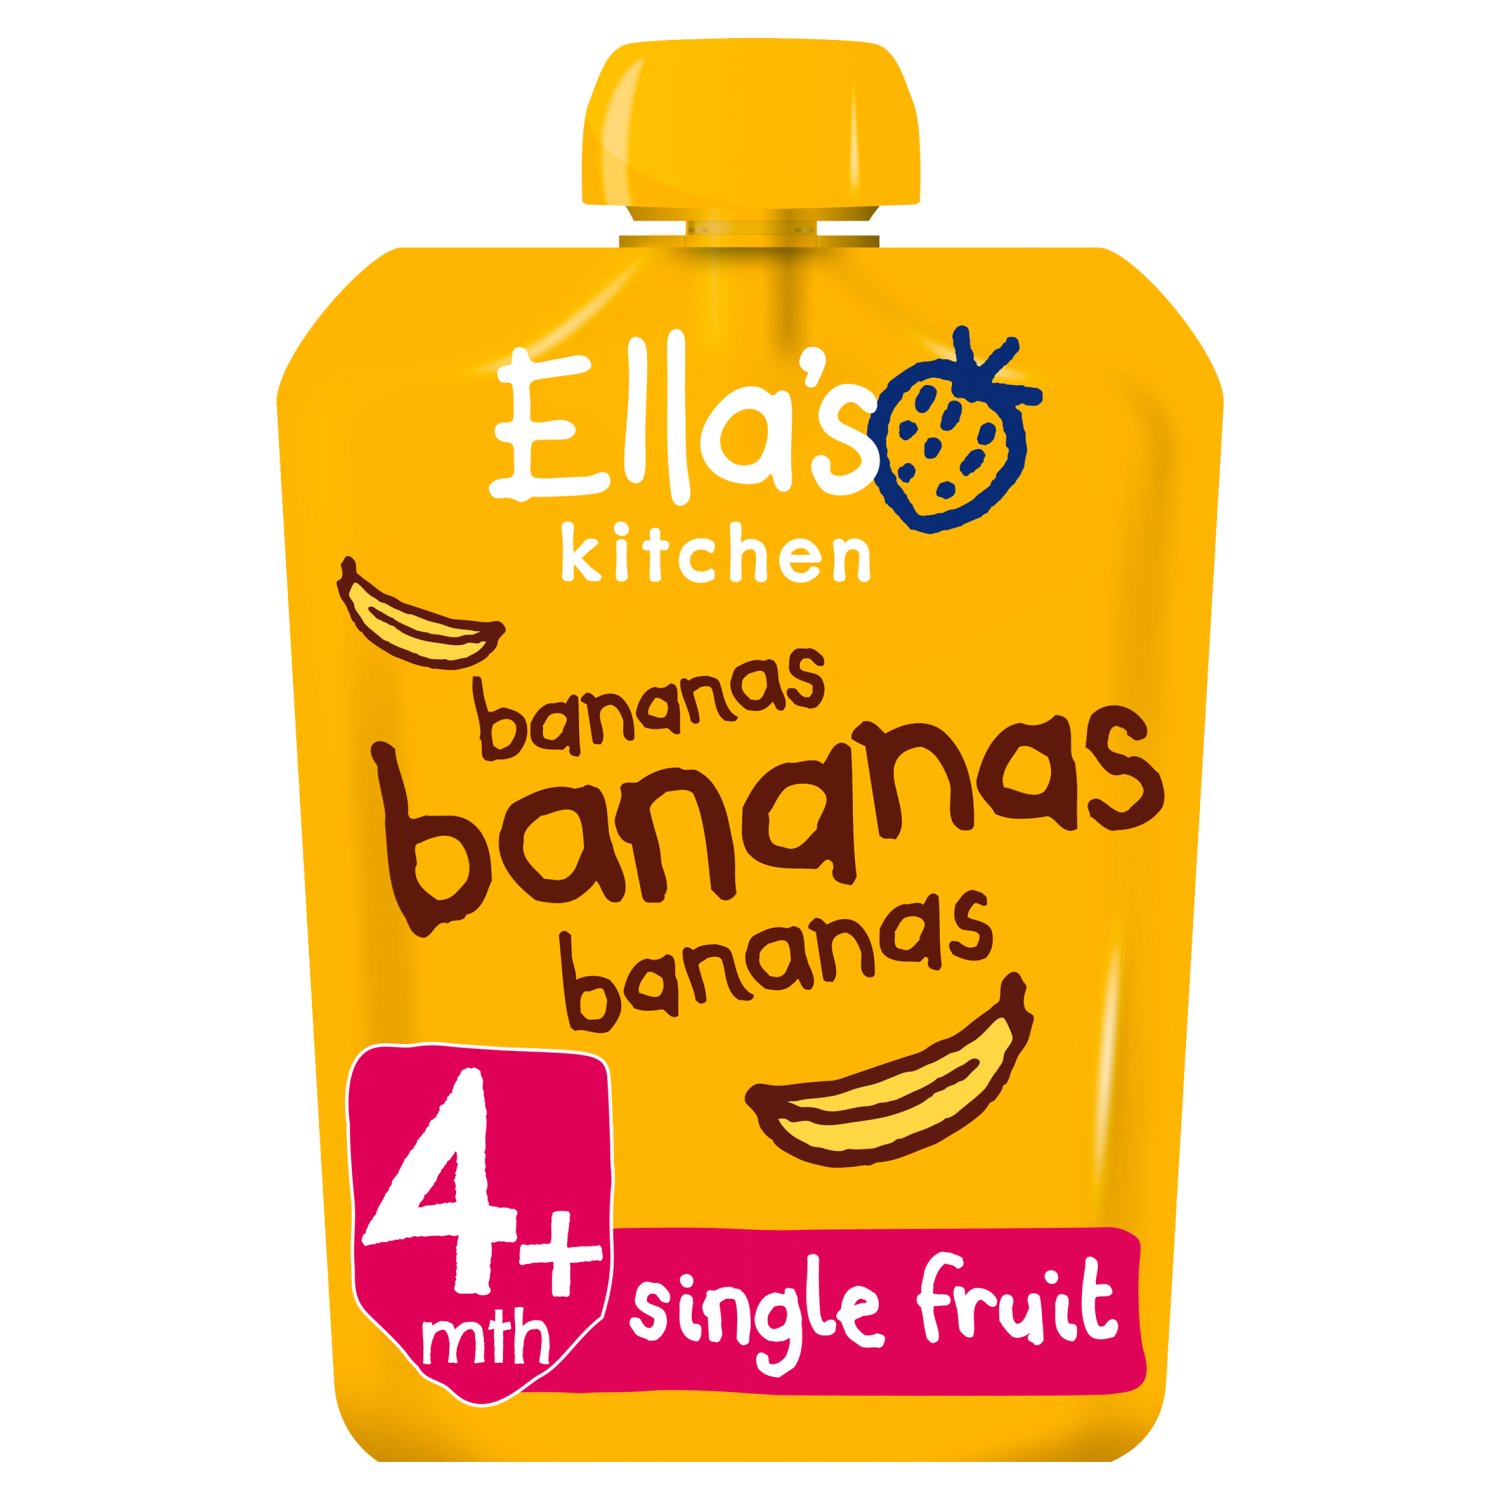 Ella's Kitchen Bananas Bananas Bananas (70 g)